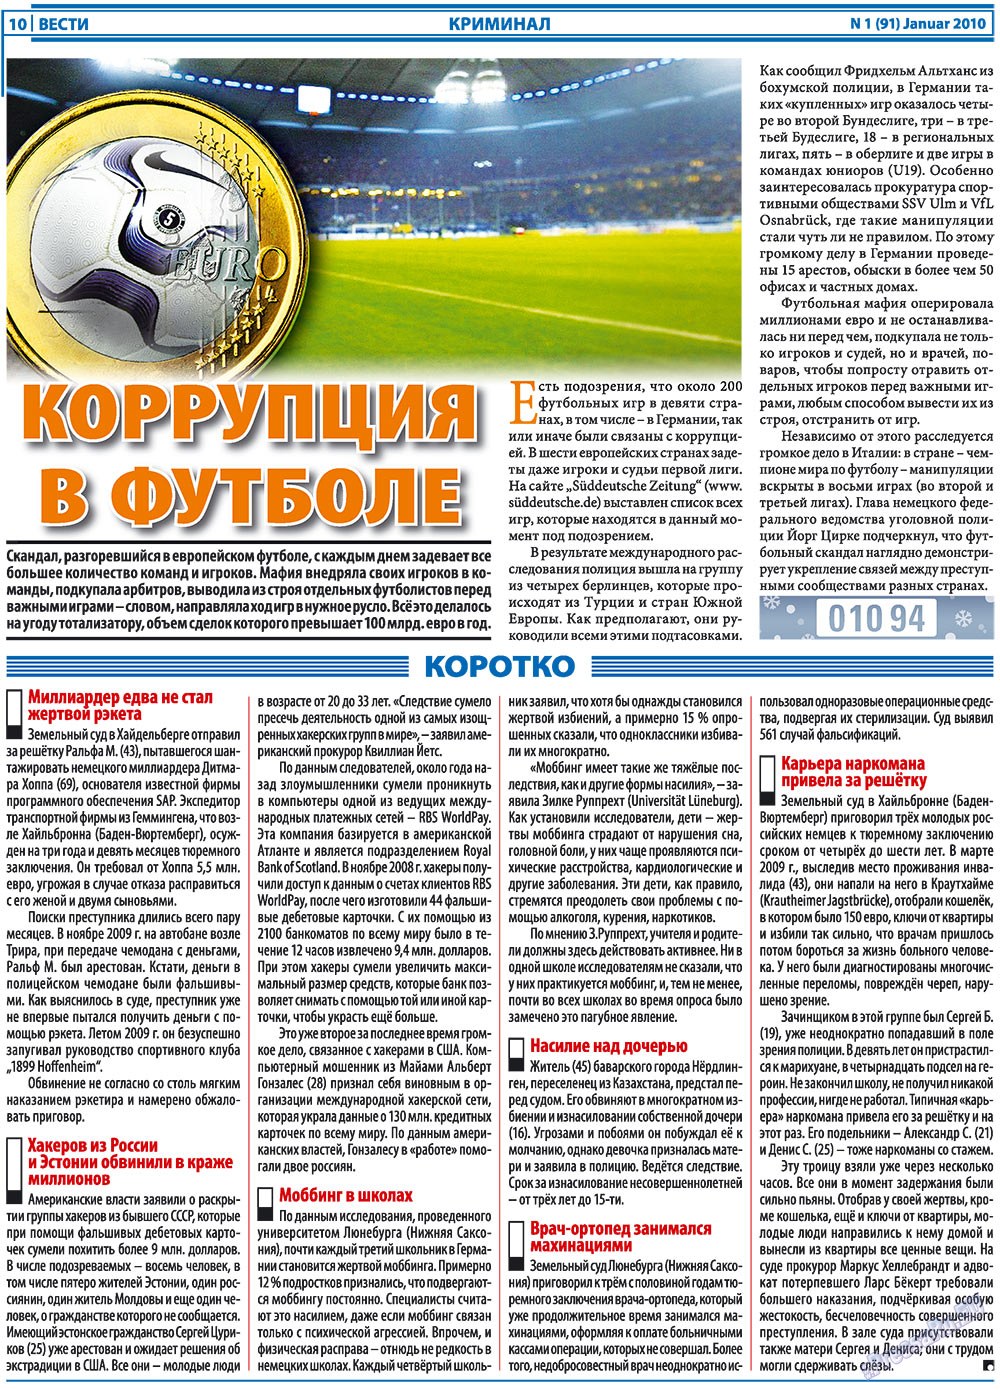 Вести, газета. 2010 №1 стр.10